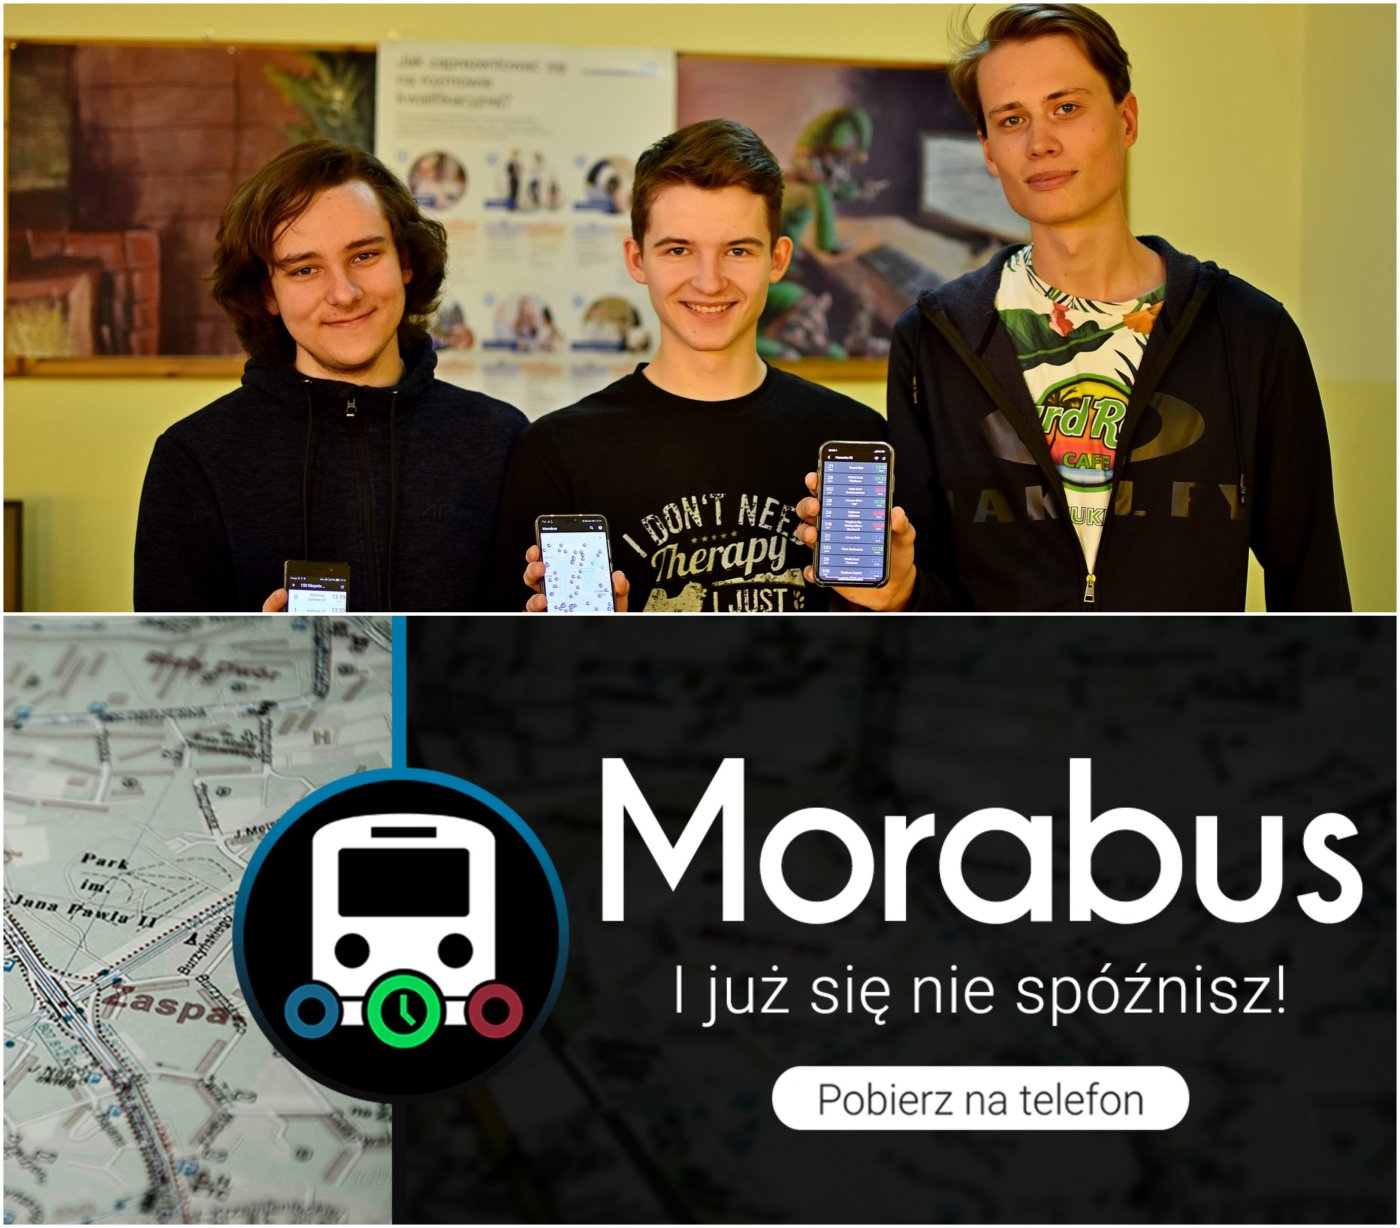 Od lewej: Bartosz Witkowski, Wojciech Ciunel i Jan Szulist, autorzy aplikacji Morabus, fot. Paweł Kukla